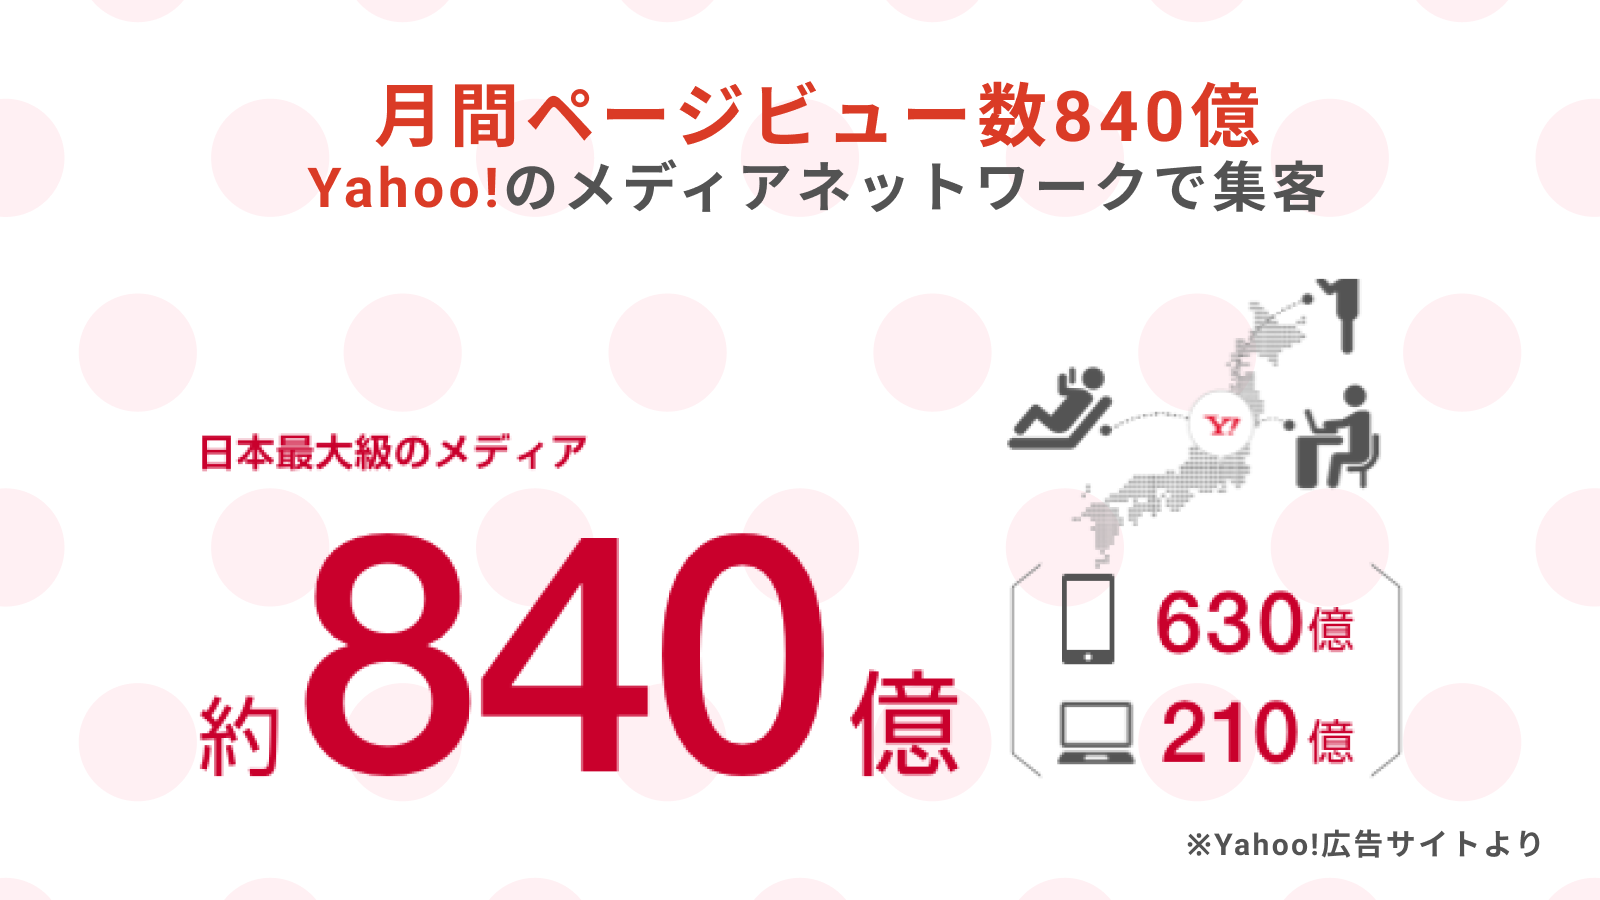 月間PV数840億 Yahoo!のメディアネットワークで集客！